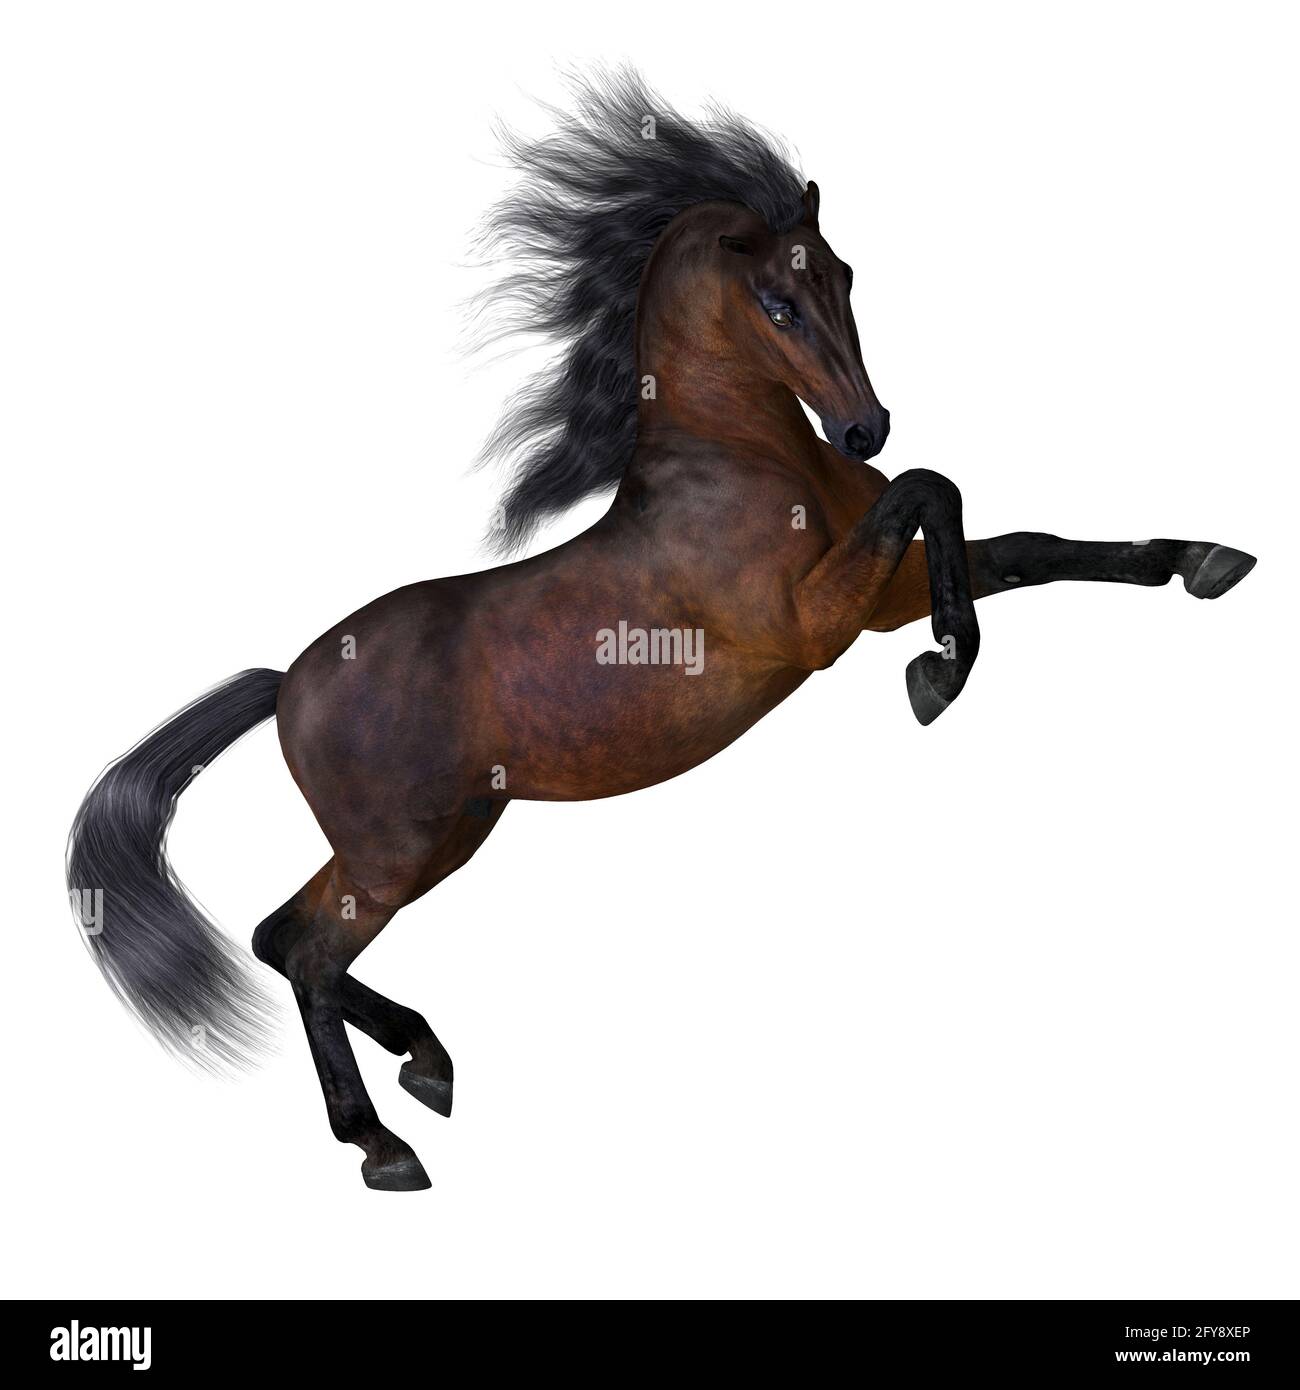 Bay est une couleur de cheval commune sur de nombreuses races différentes avec un brun rougeâtre profond avec la manie noire et la queue. Banque D'Images